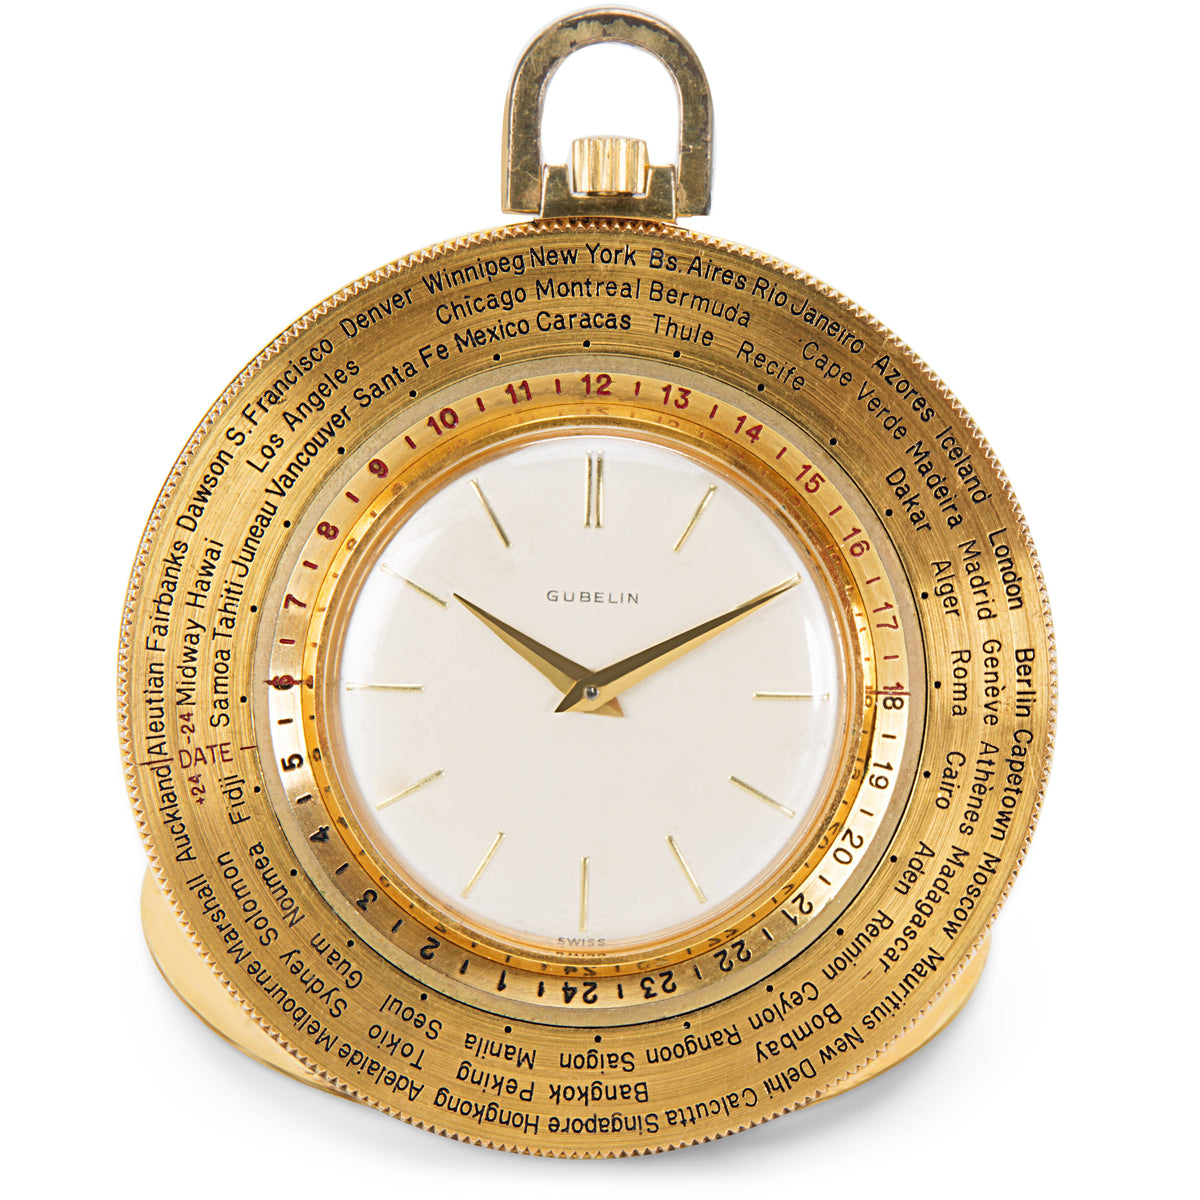 Gubelin World Timer Pocket Watch in 14K Gold-Filled